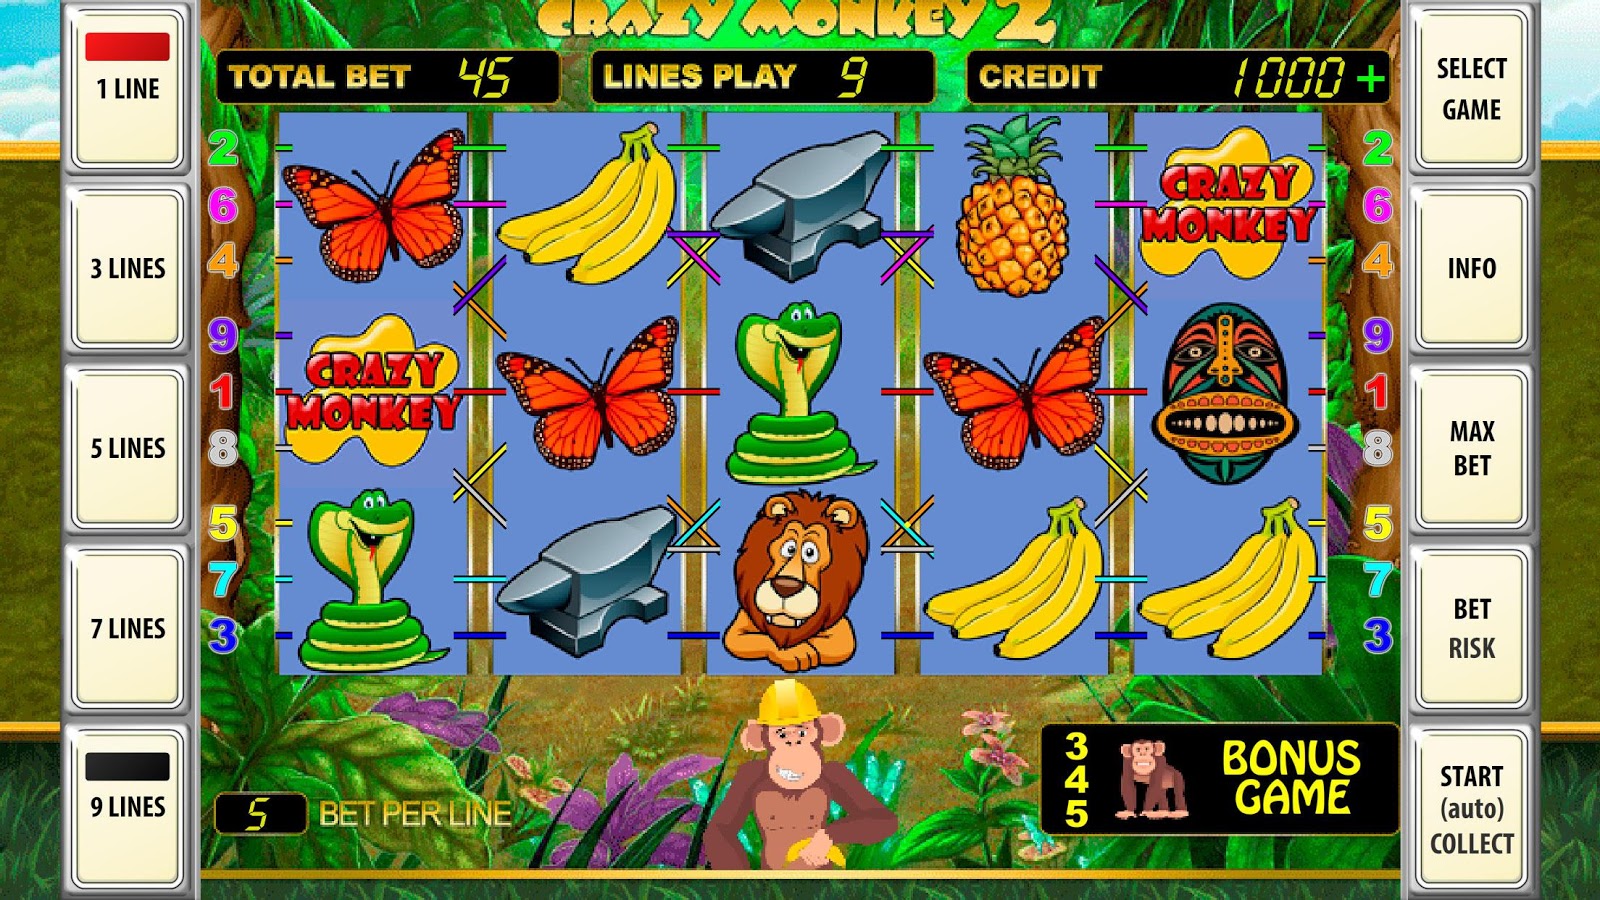 Играть онлайн бесплатно в игровые автоматы обезьяны 1 xbet игровые автоматы россия